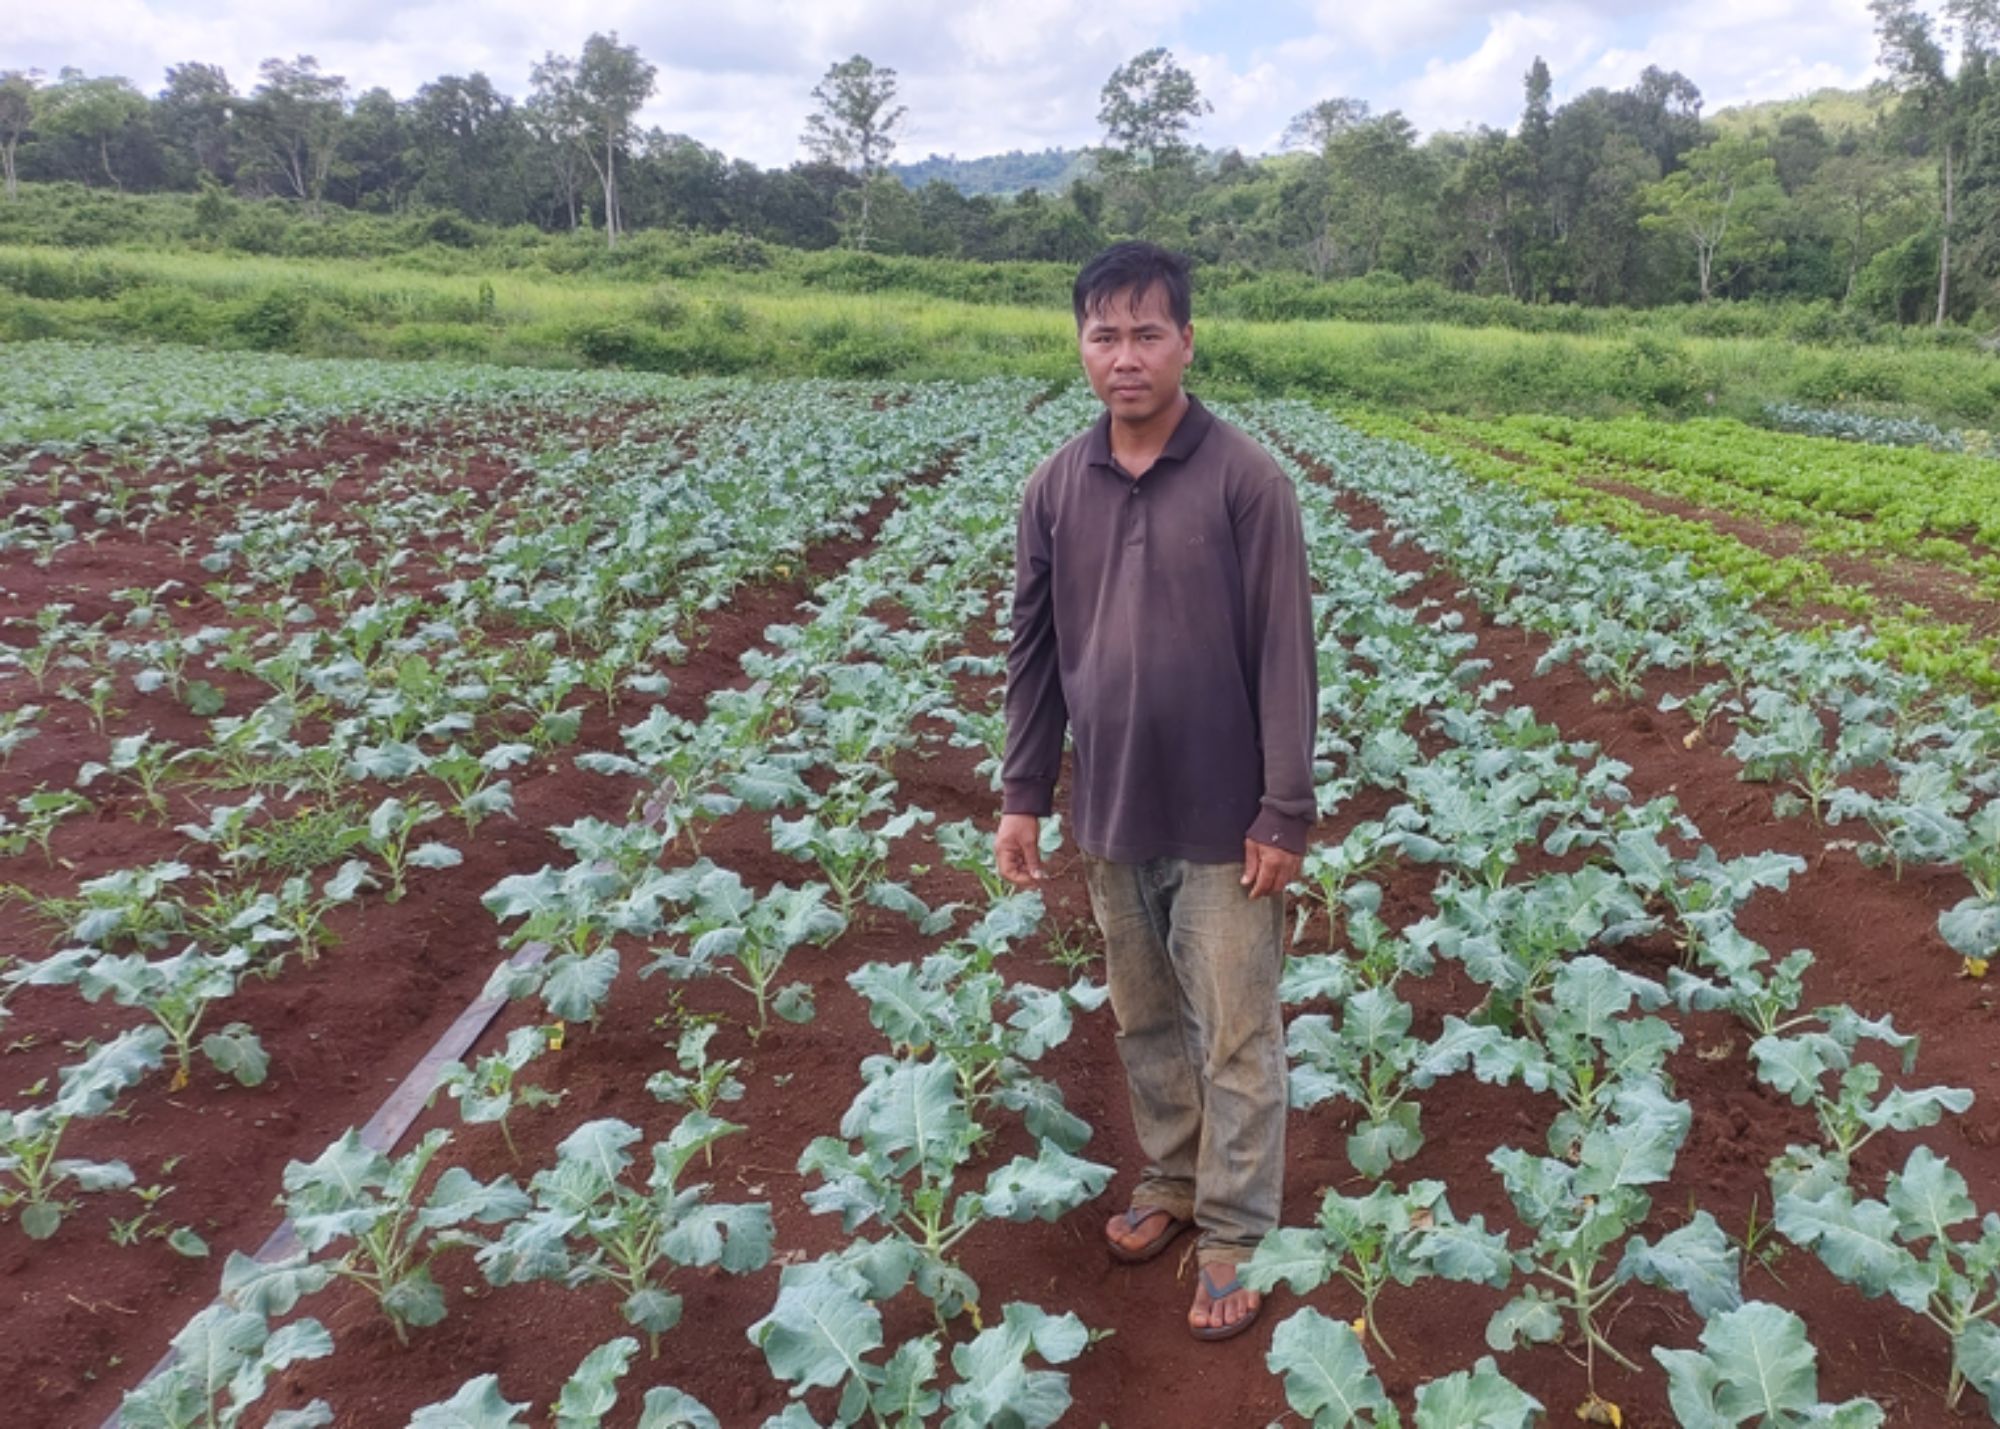 Broccoli farmer in Cambodia 